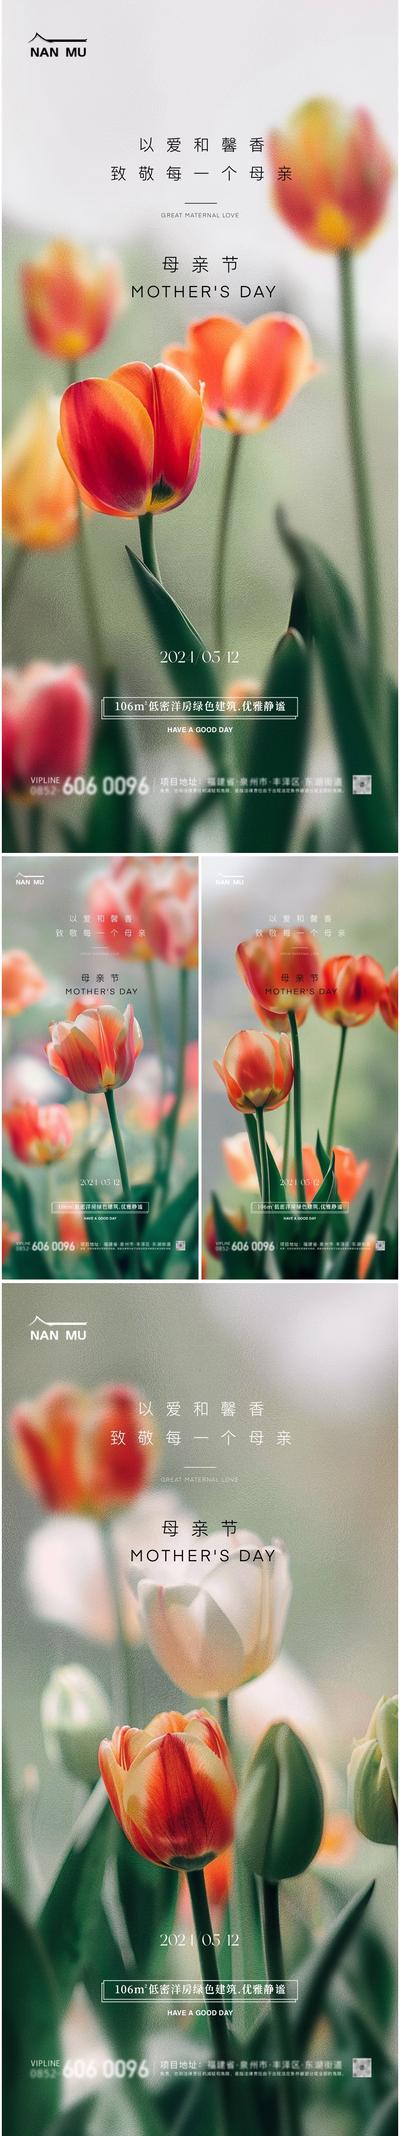 【南门网】广告 海报 地产 母亲节 节日 高端 质感 创意 系列 房地产 高级 郁金香